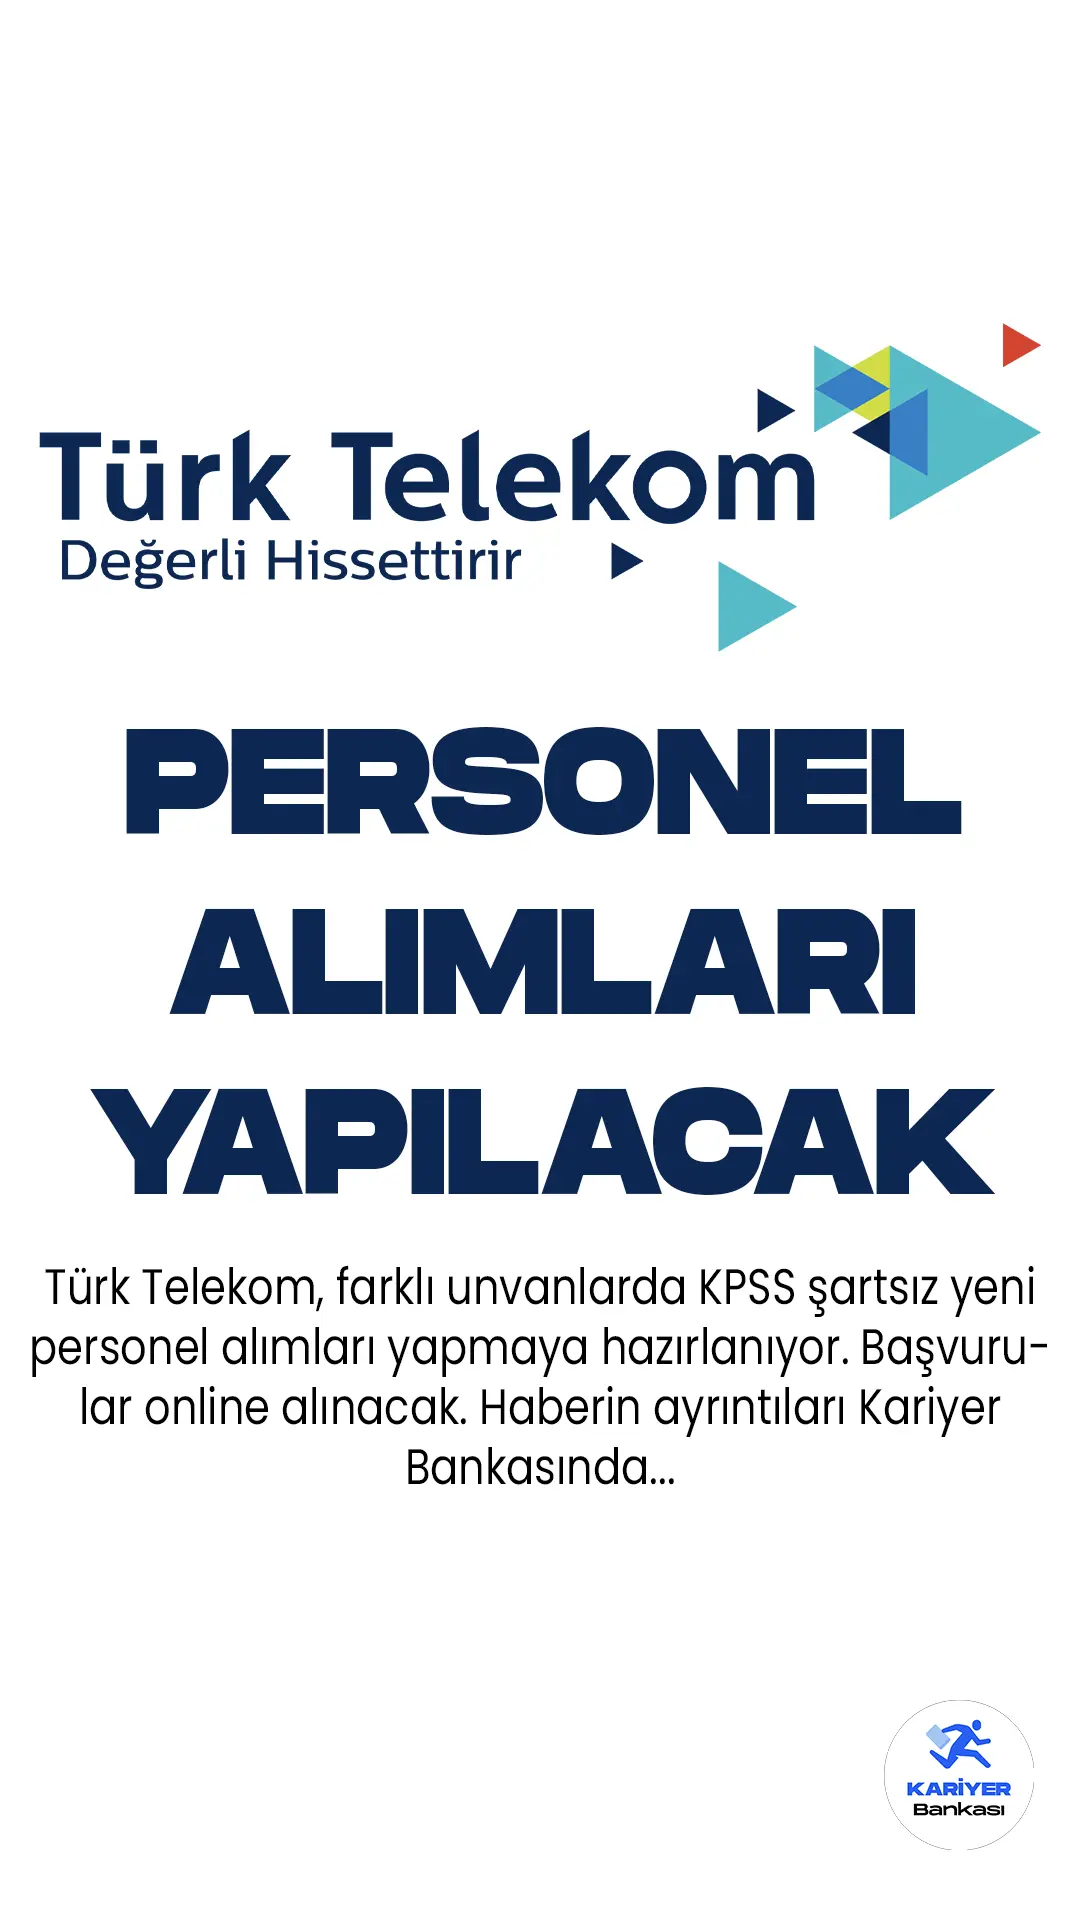 Türk Telekom, Türkiye'nin öncü iletişim ve internet hizmet sağlayıcısı olarak, bünyesinde çalıştırmak üzere farklı alanlarda uzman ve genç yeteneklere ihtiyaç duyuyor.